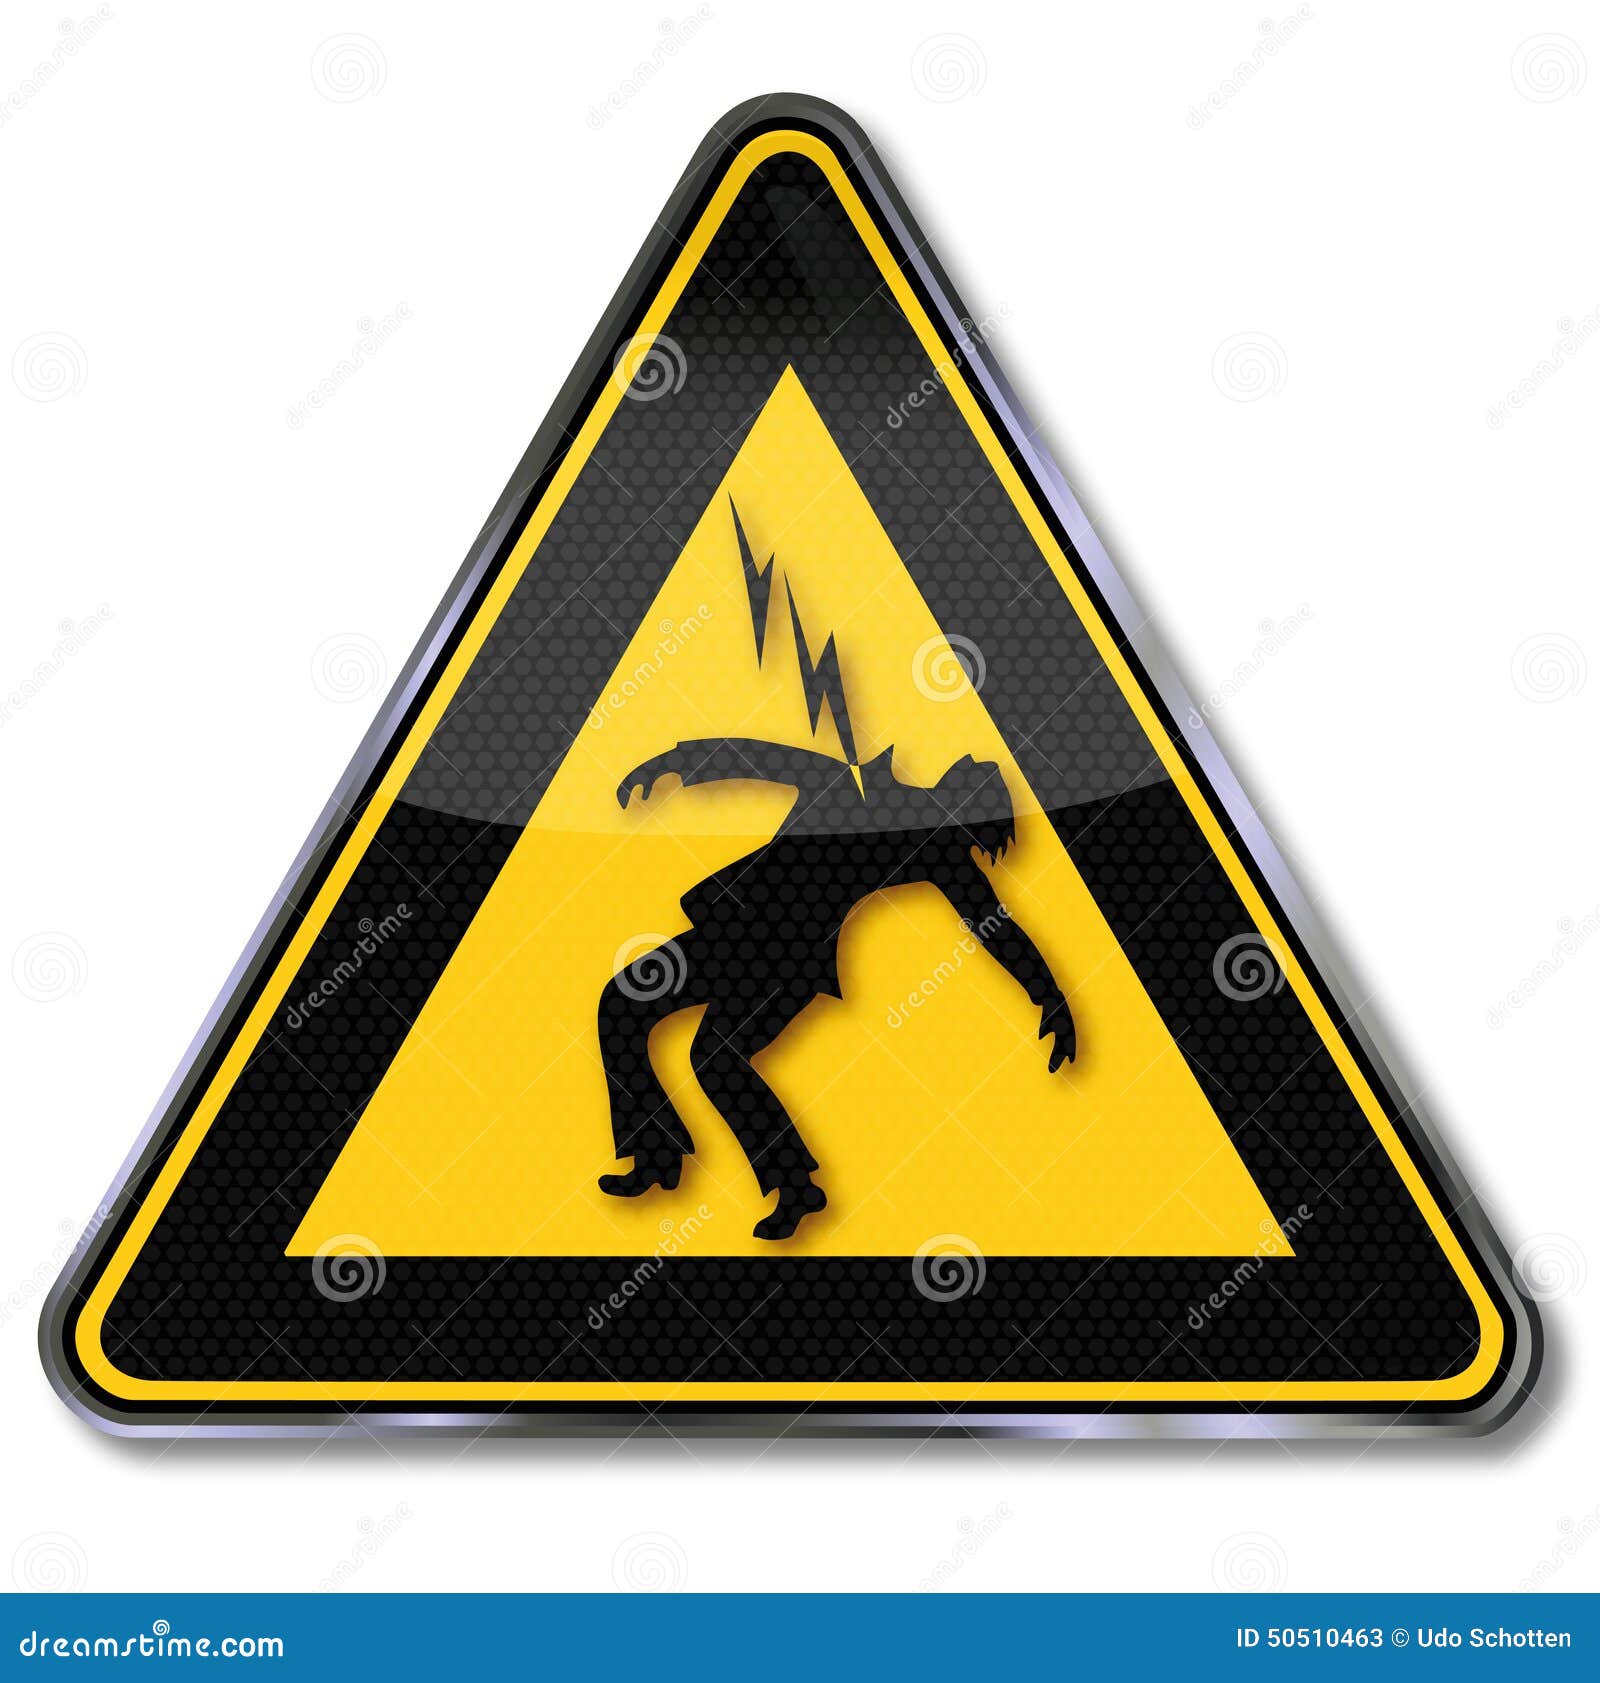 beware of electric shock